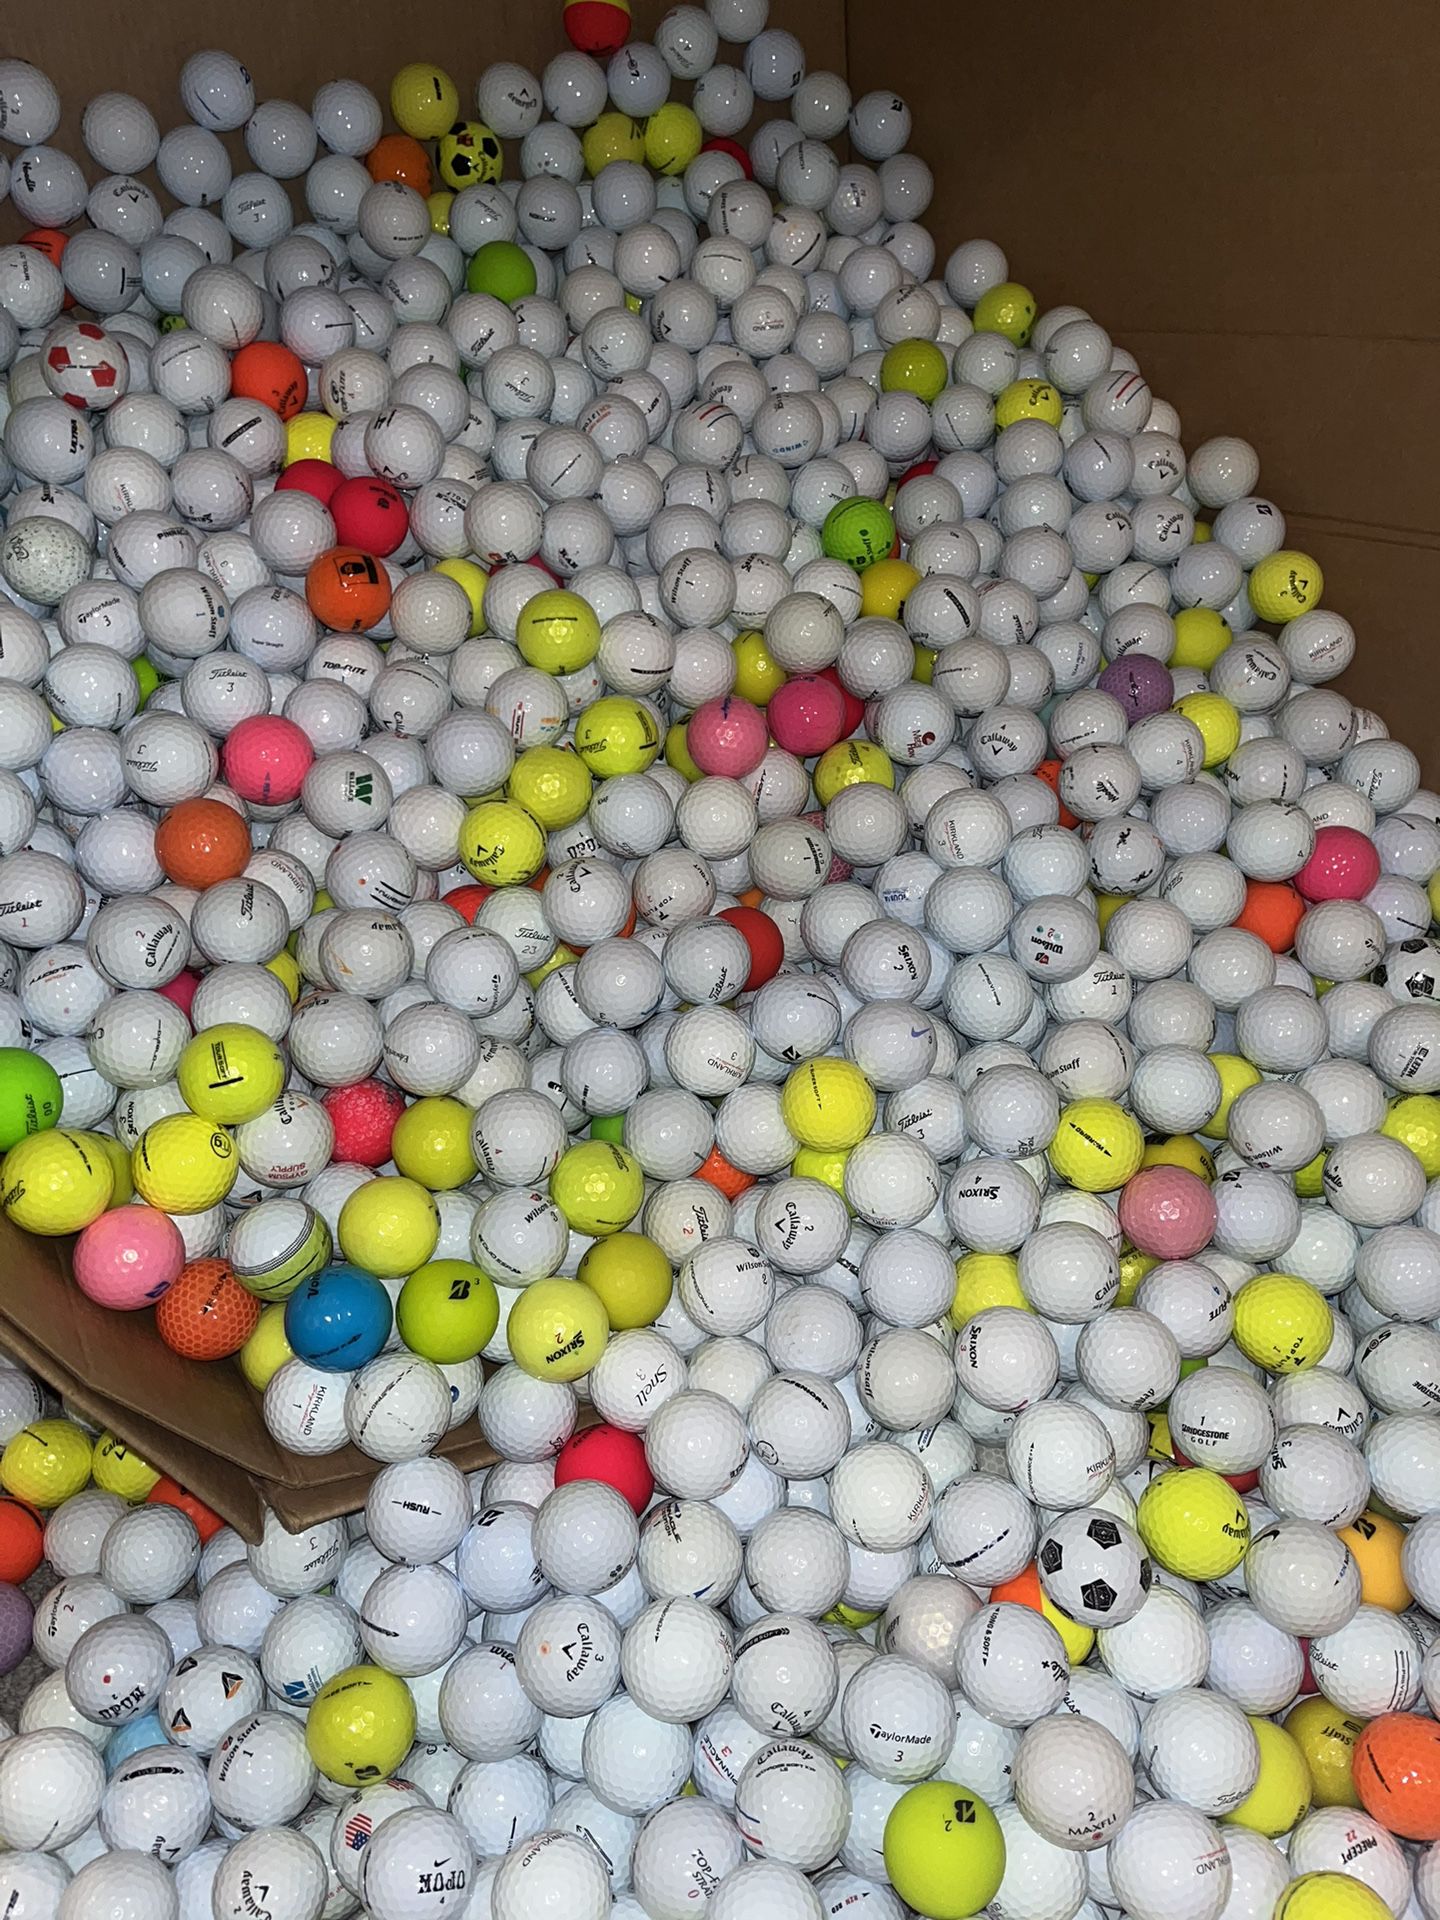 Golf Balls!